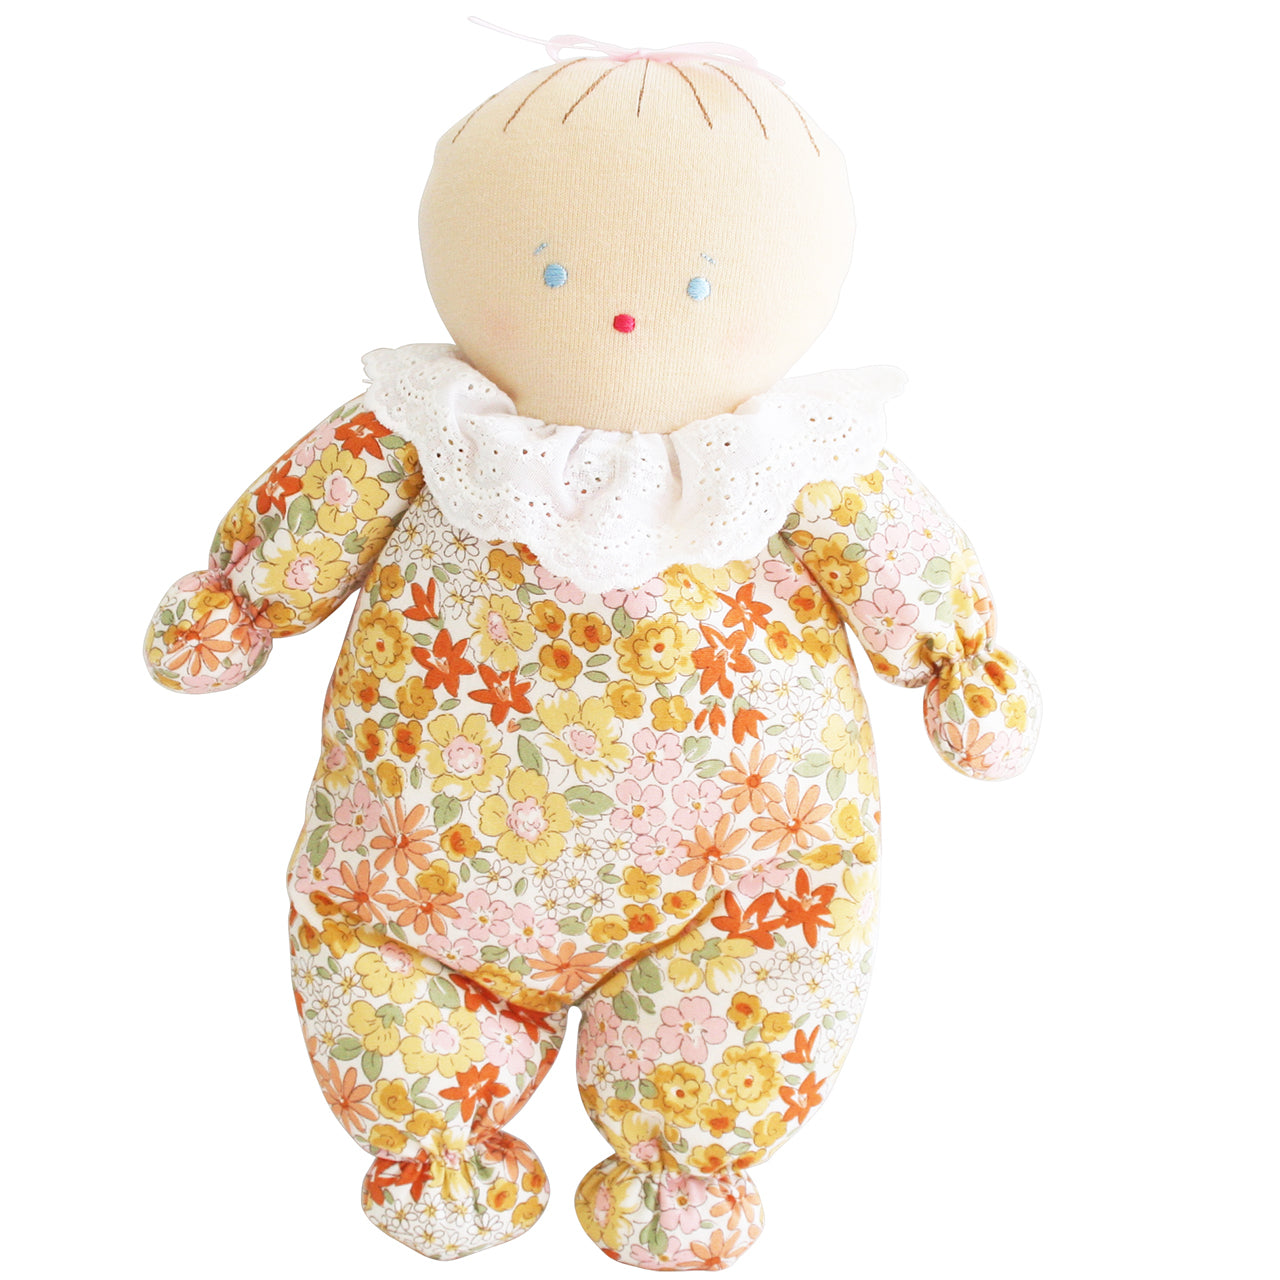 Alimrose - Asleep Awake Baby Doll 24cm (Sweet Marigold)